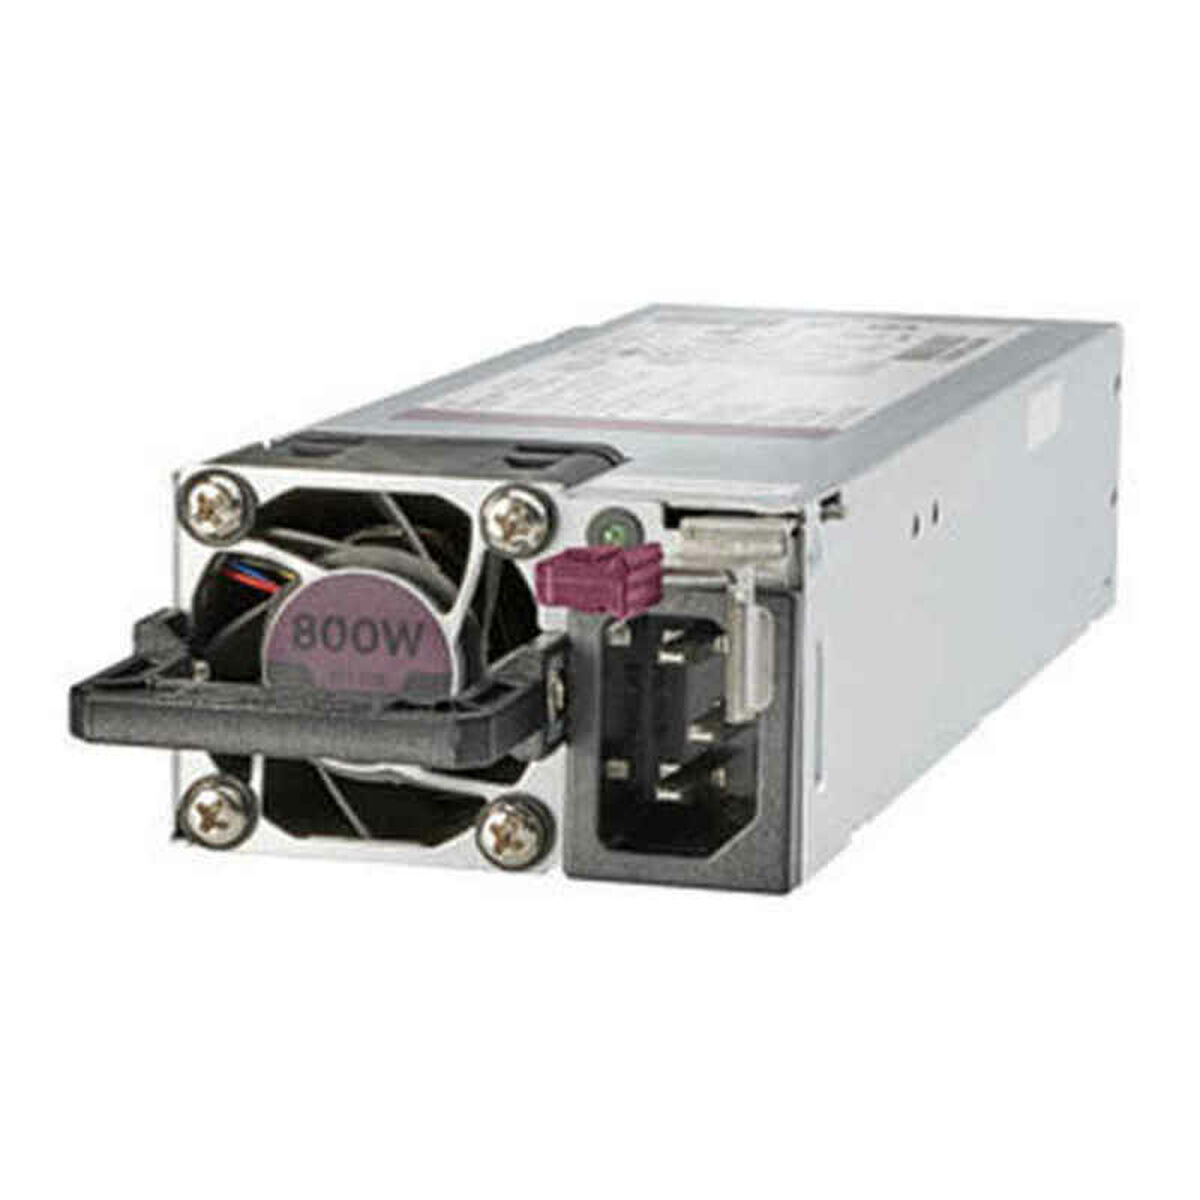 800W, (865414-B21) halogenarm HPE Watt 800 Slot Netzteile mit Platinum-Netzteilkit HPE Hot-Plug-fähig, Flex